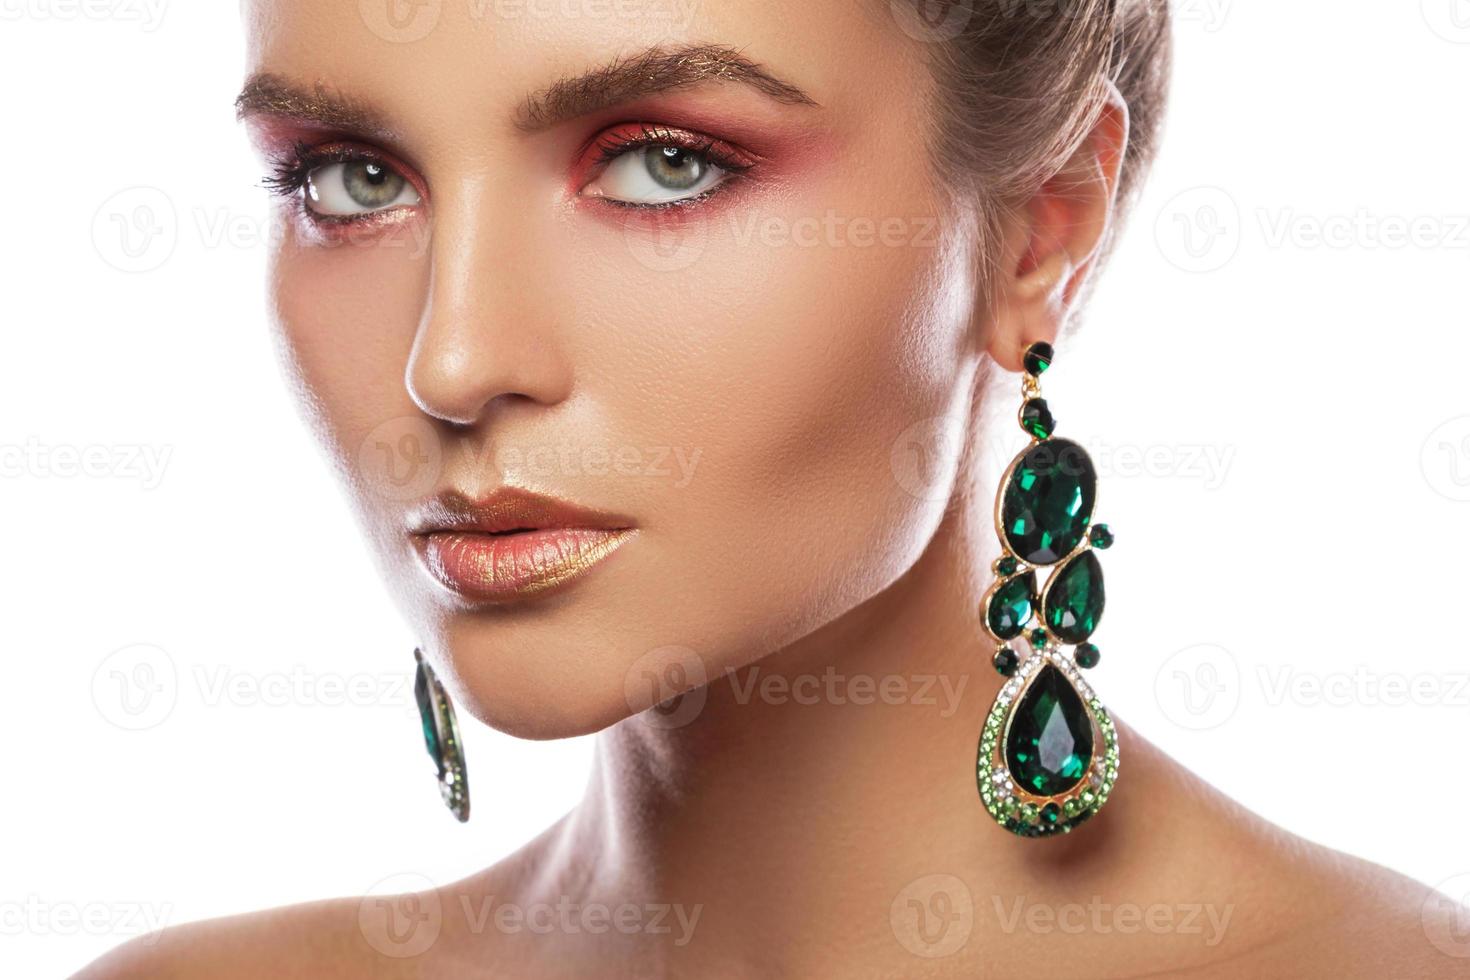 mulher bonita com uma maquiagem colorida está usando brincos com esmeraldas verdes foto